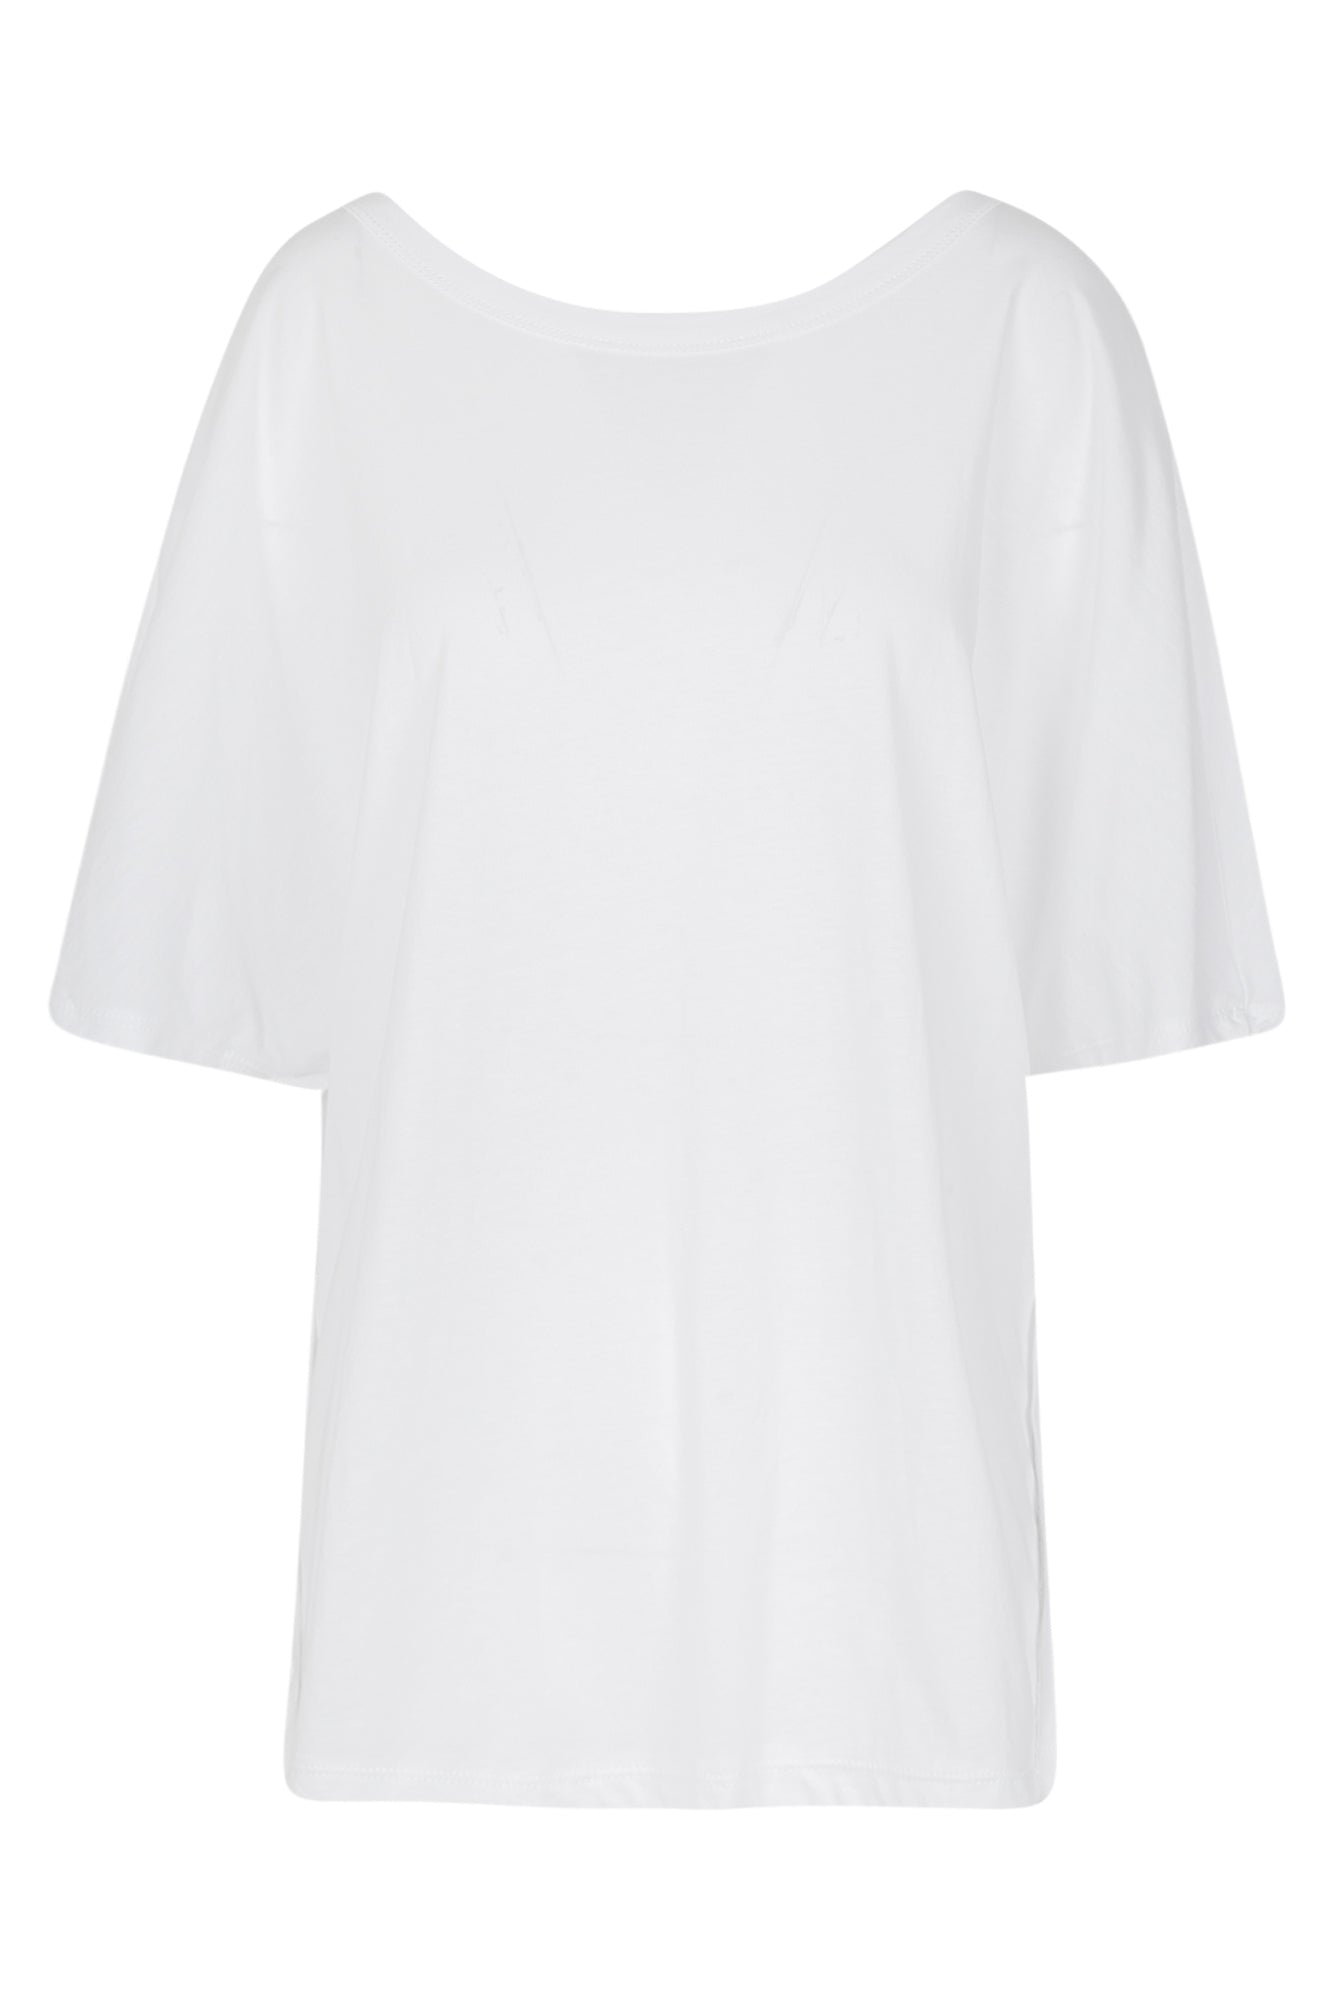 La Femme Blanche - T-shirt - 431475 - Bianco